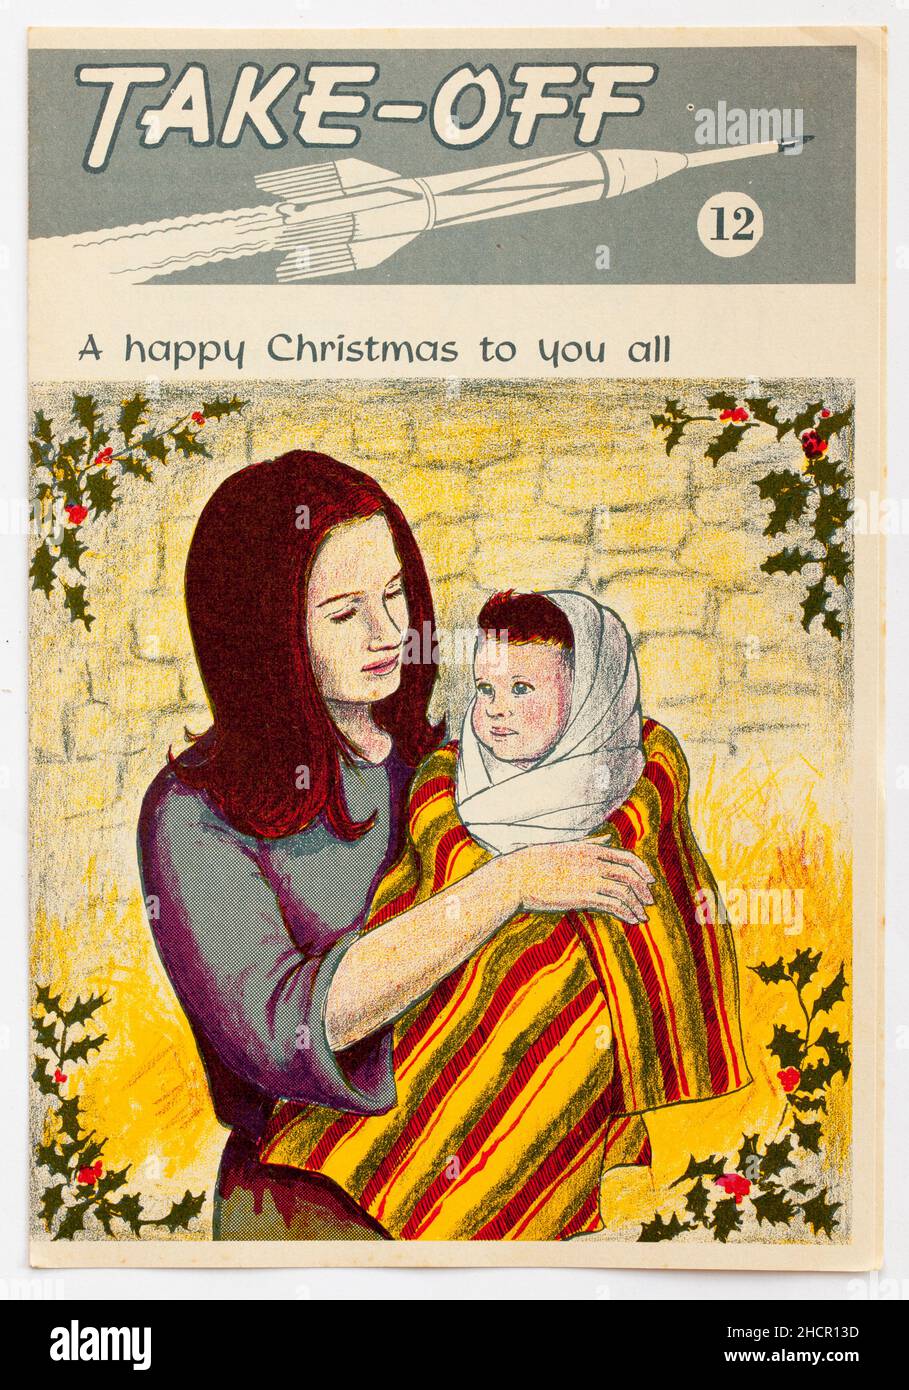 1970s Édition de Noël de Take Off une brochure religieuse publiée par le Conseil national de l'éducation chrétienne Banque D'Images